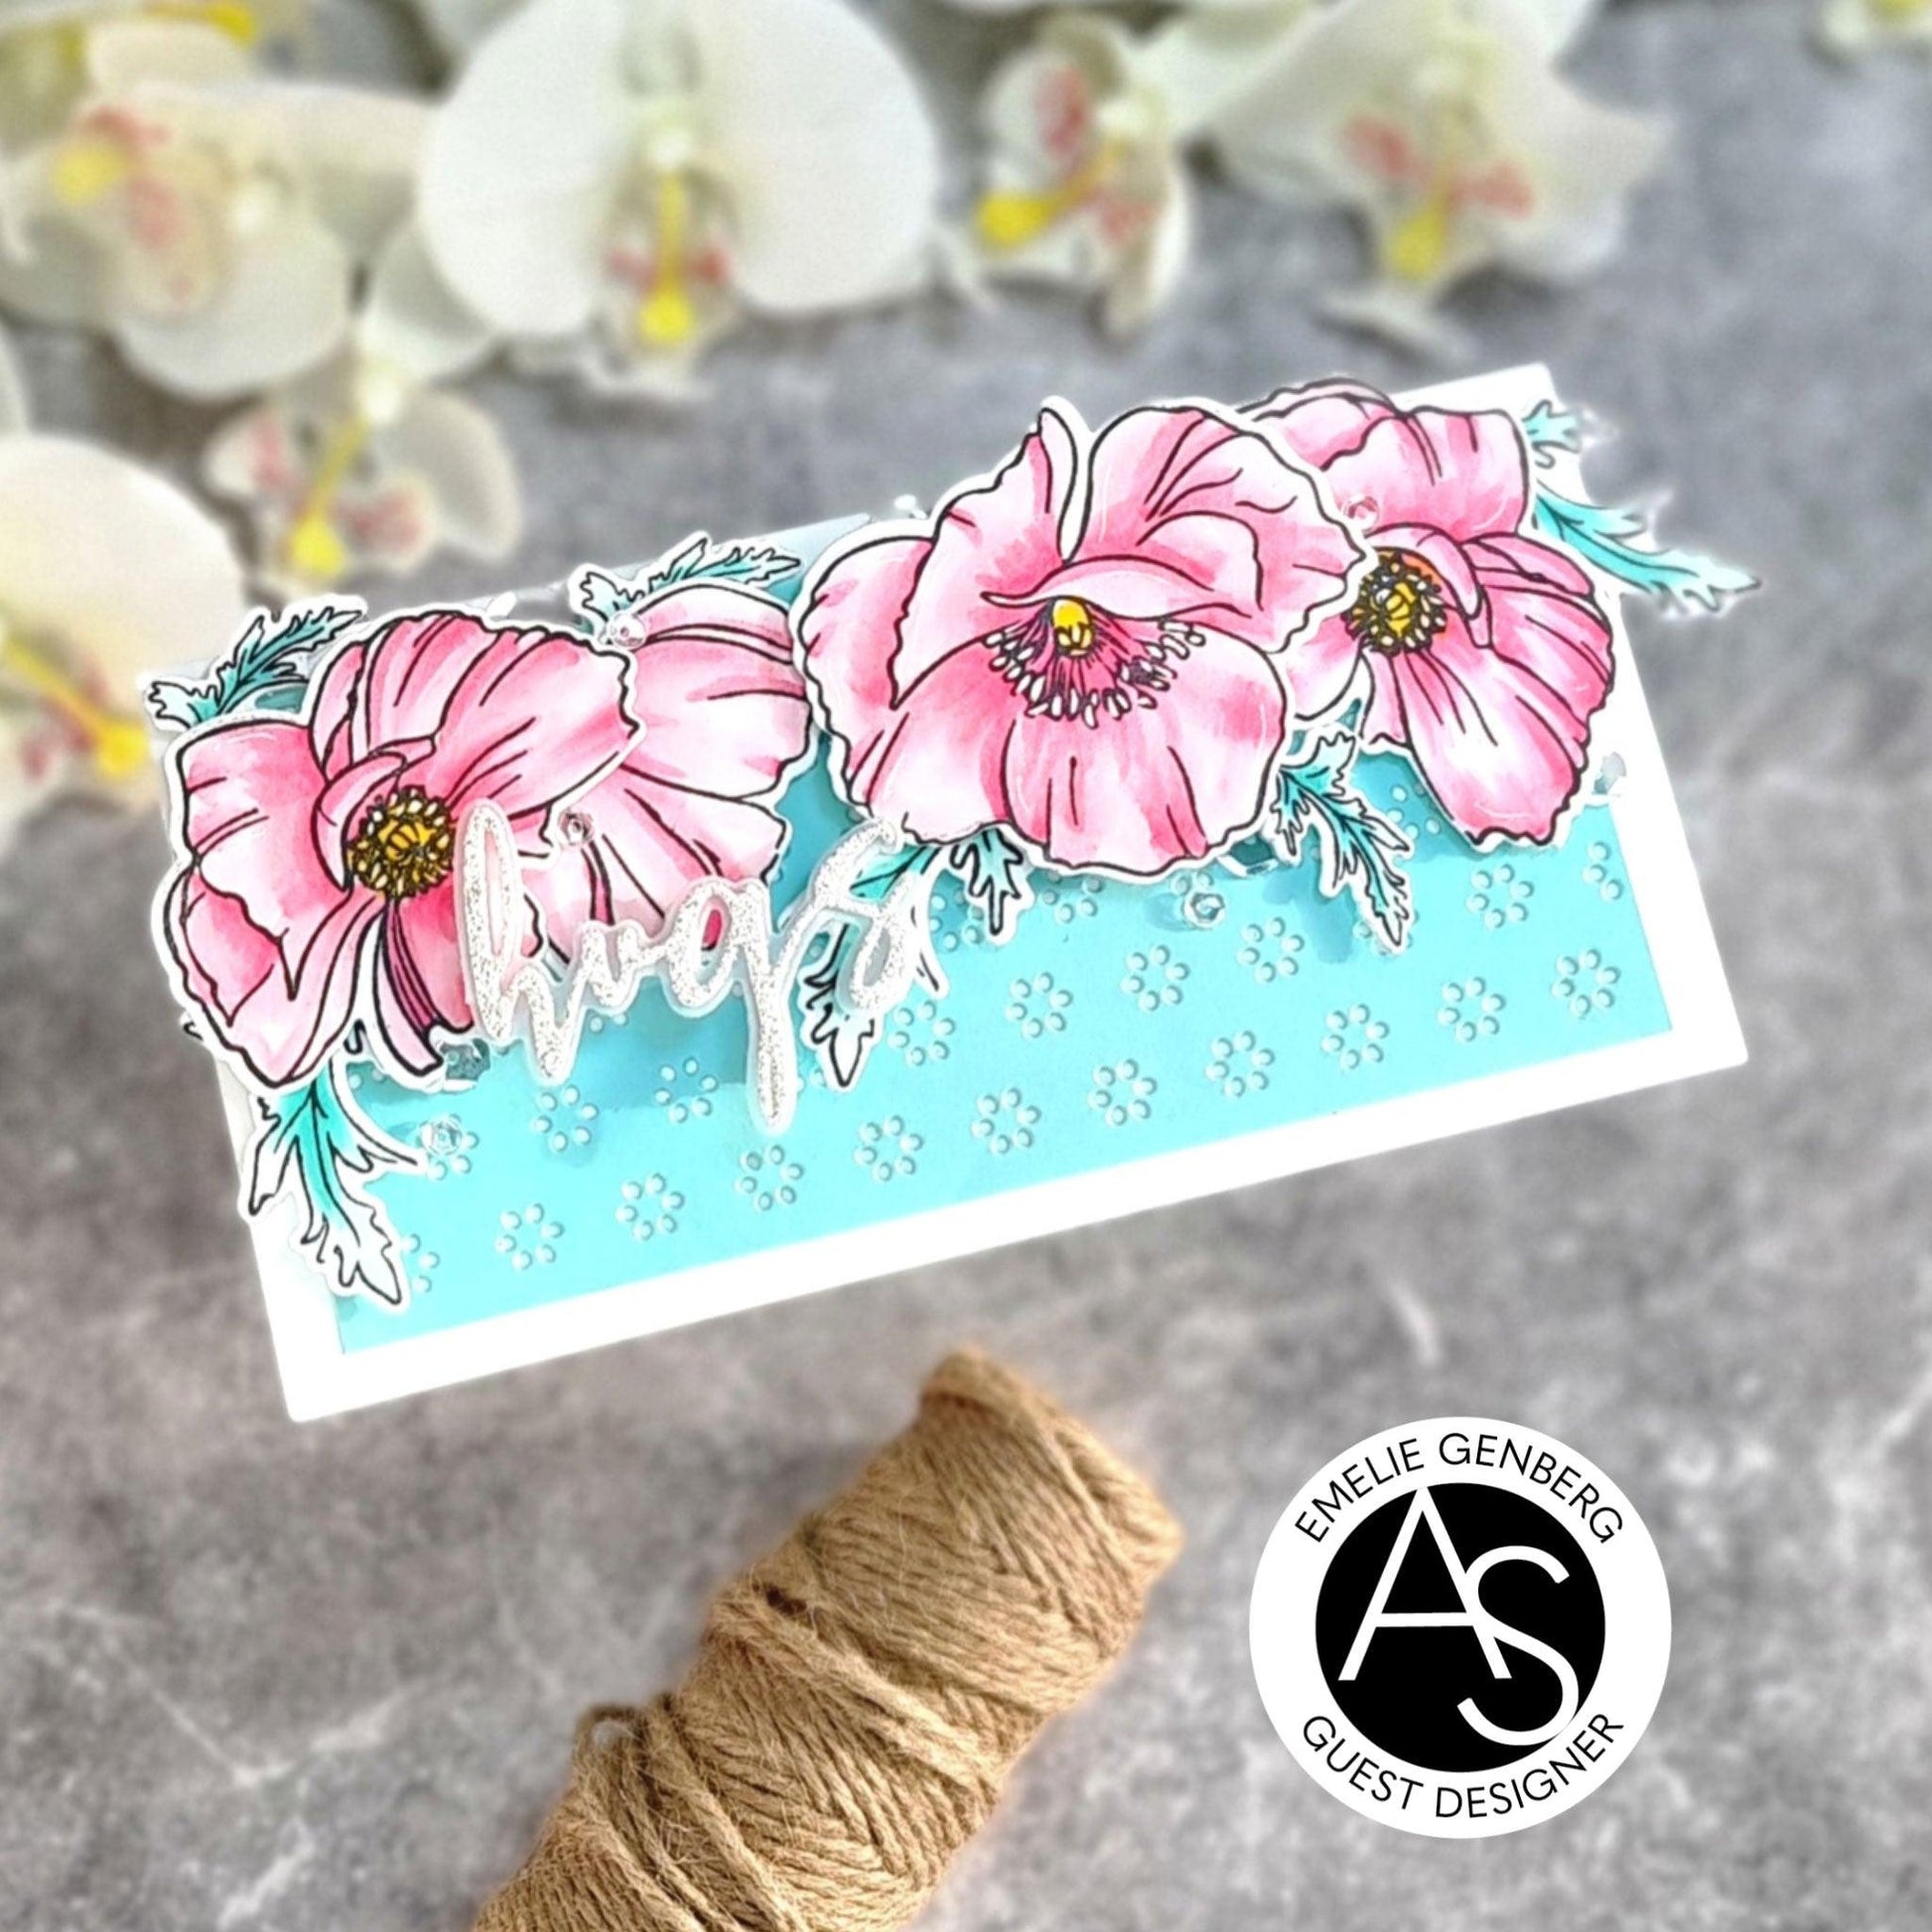 Alex-syberia-designs-poppies-flowers-stamp-dies-love-valentines-friend-cardmaking-handmadecards-scrapbook-shop-tutorial-cardmakers-coloring-cover-die-plate-flowers